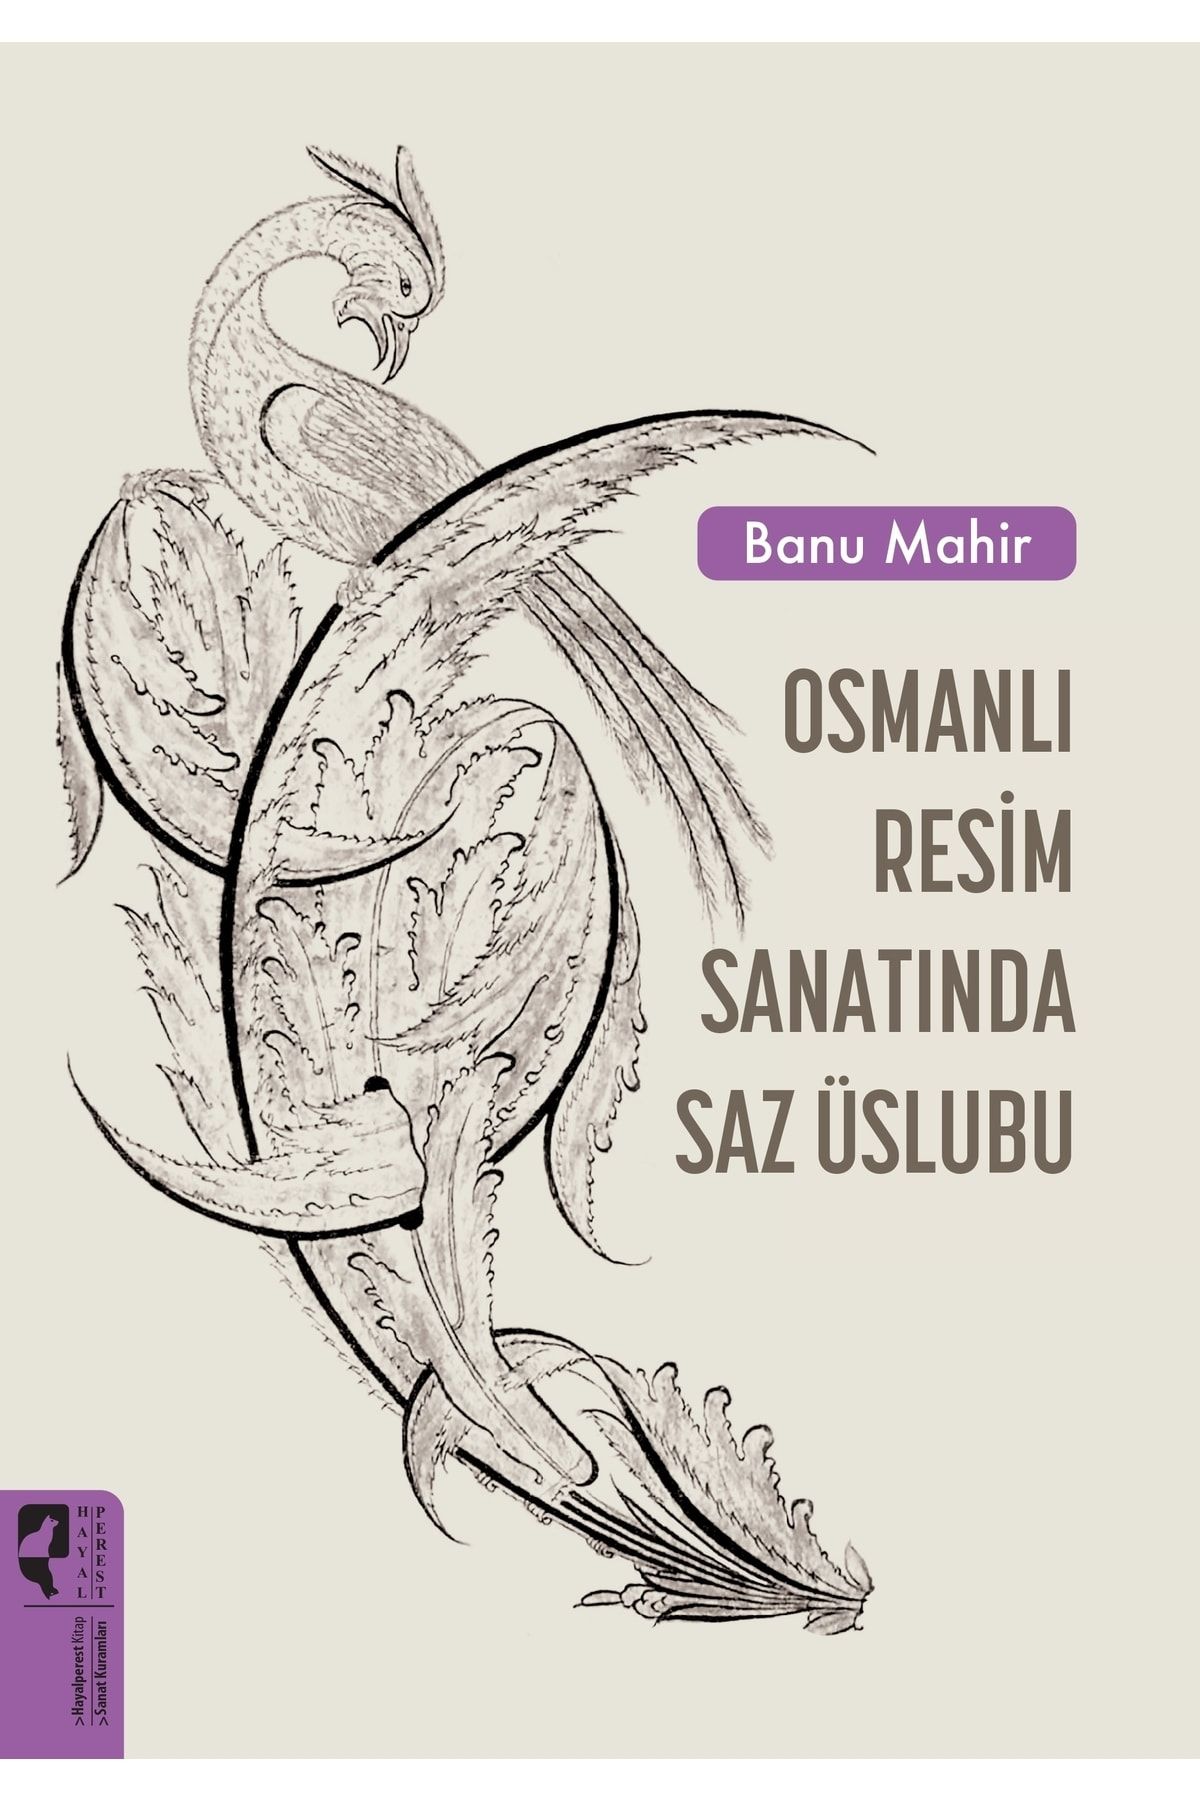 Genel Markalar Osmanlı Resim Sanatında Saz Üslubu - Hayalperest Yayınları - Banu Mahir Kitabı